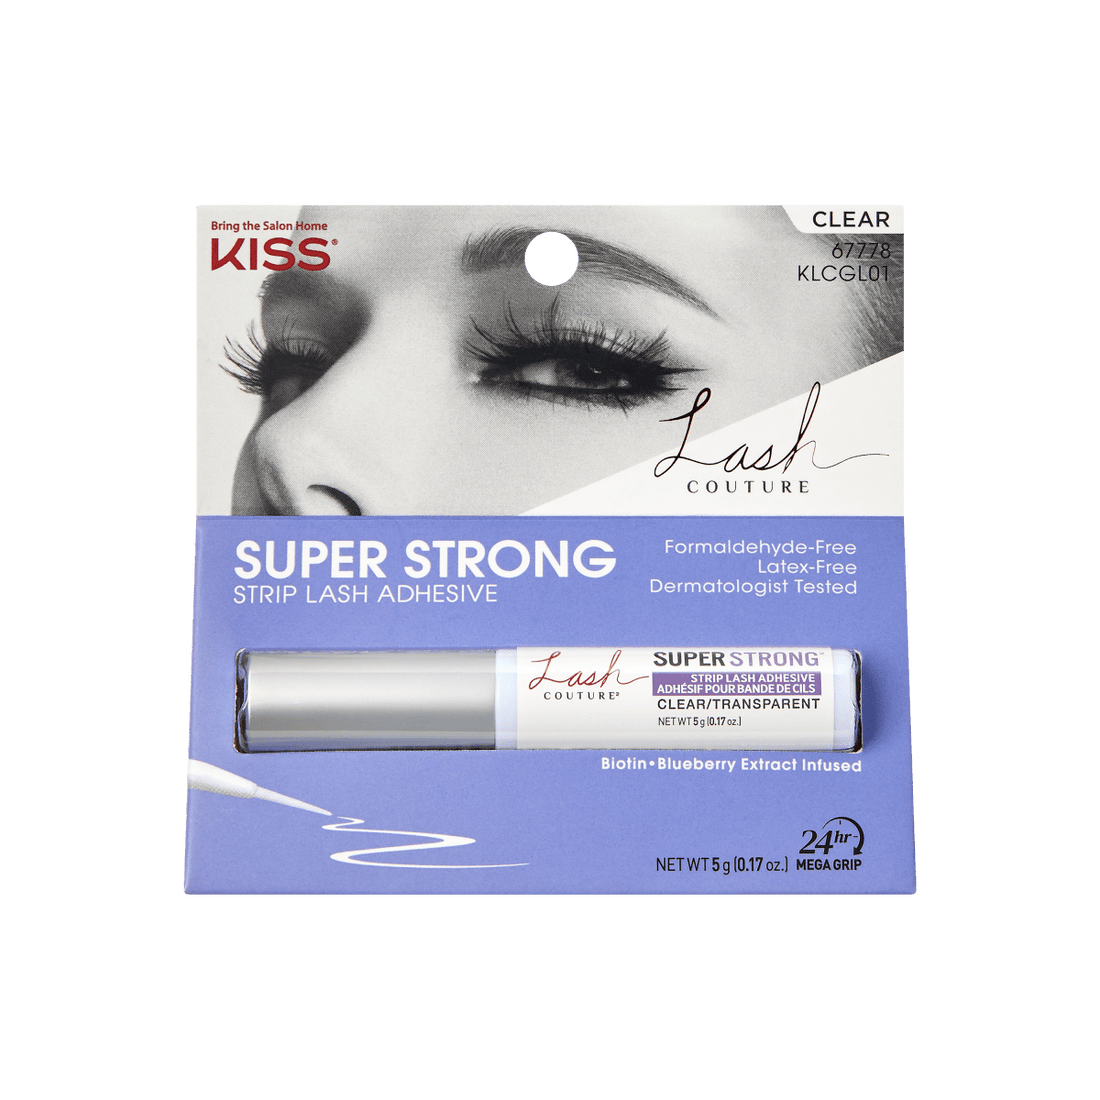 KISS Lash Couture Latex-Free Super Strong Strip Eyelash Adhesive – KISS USA